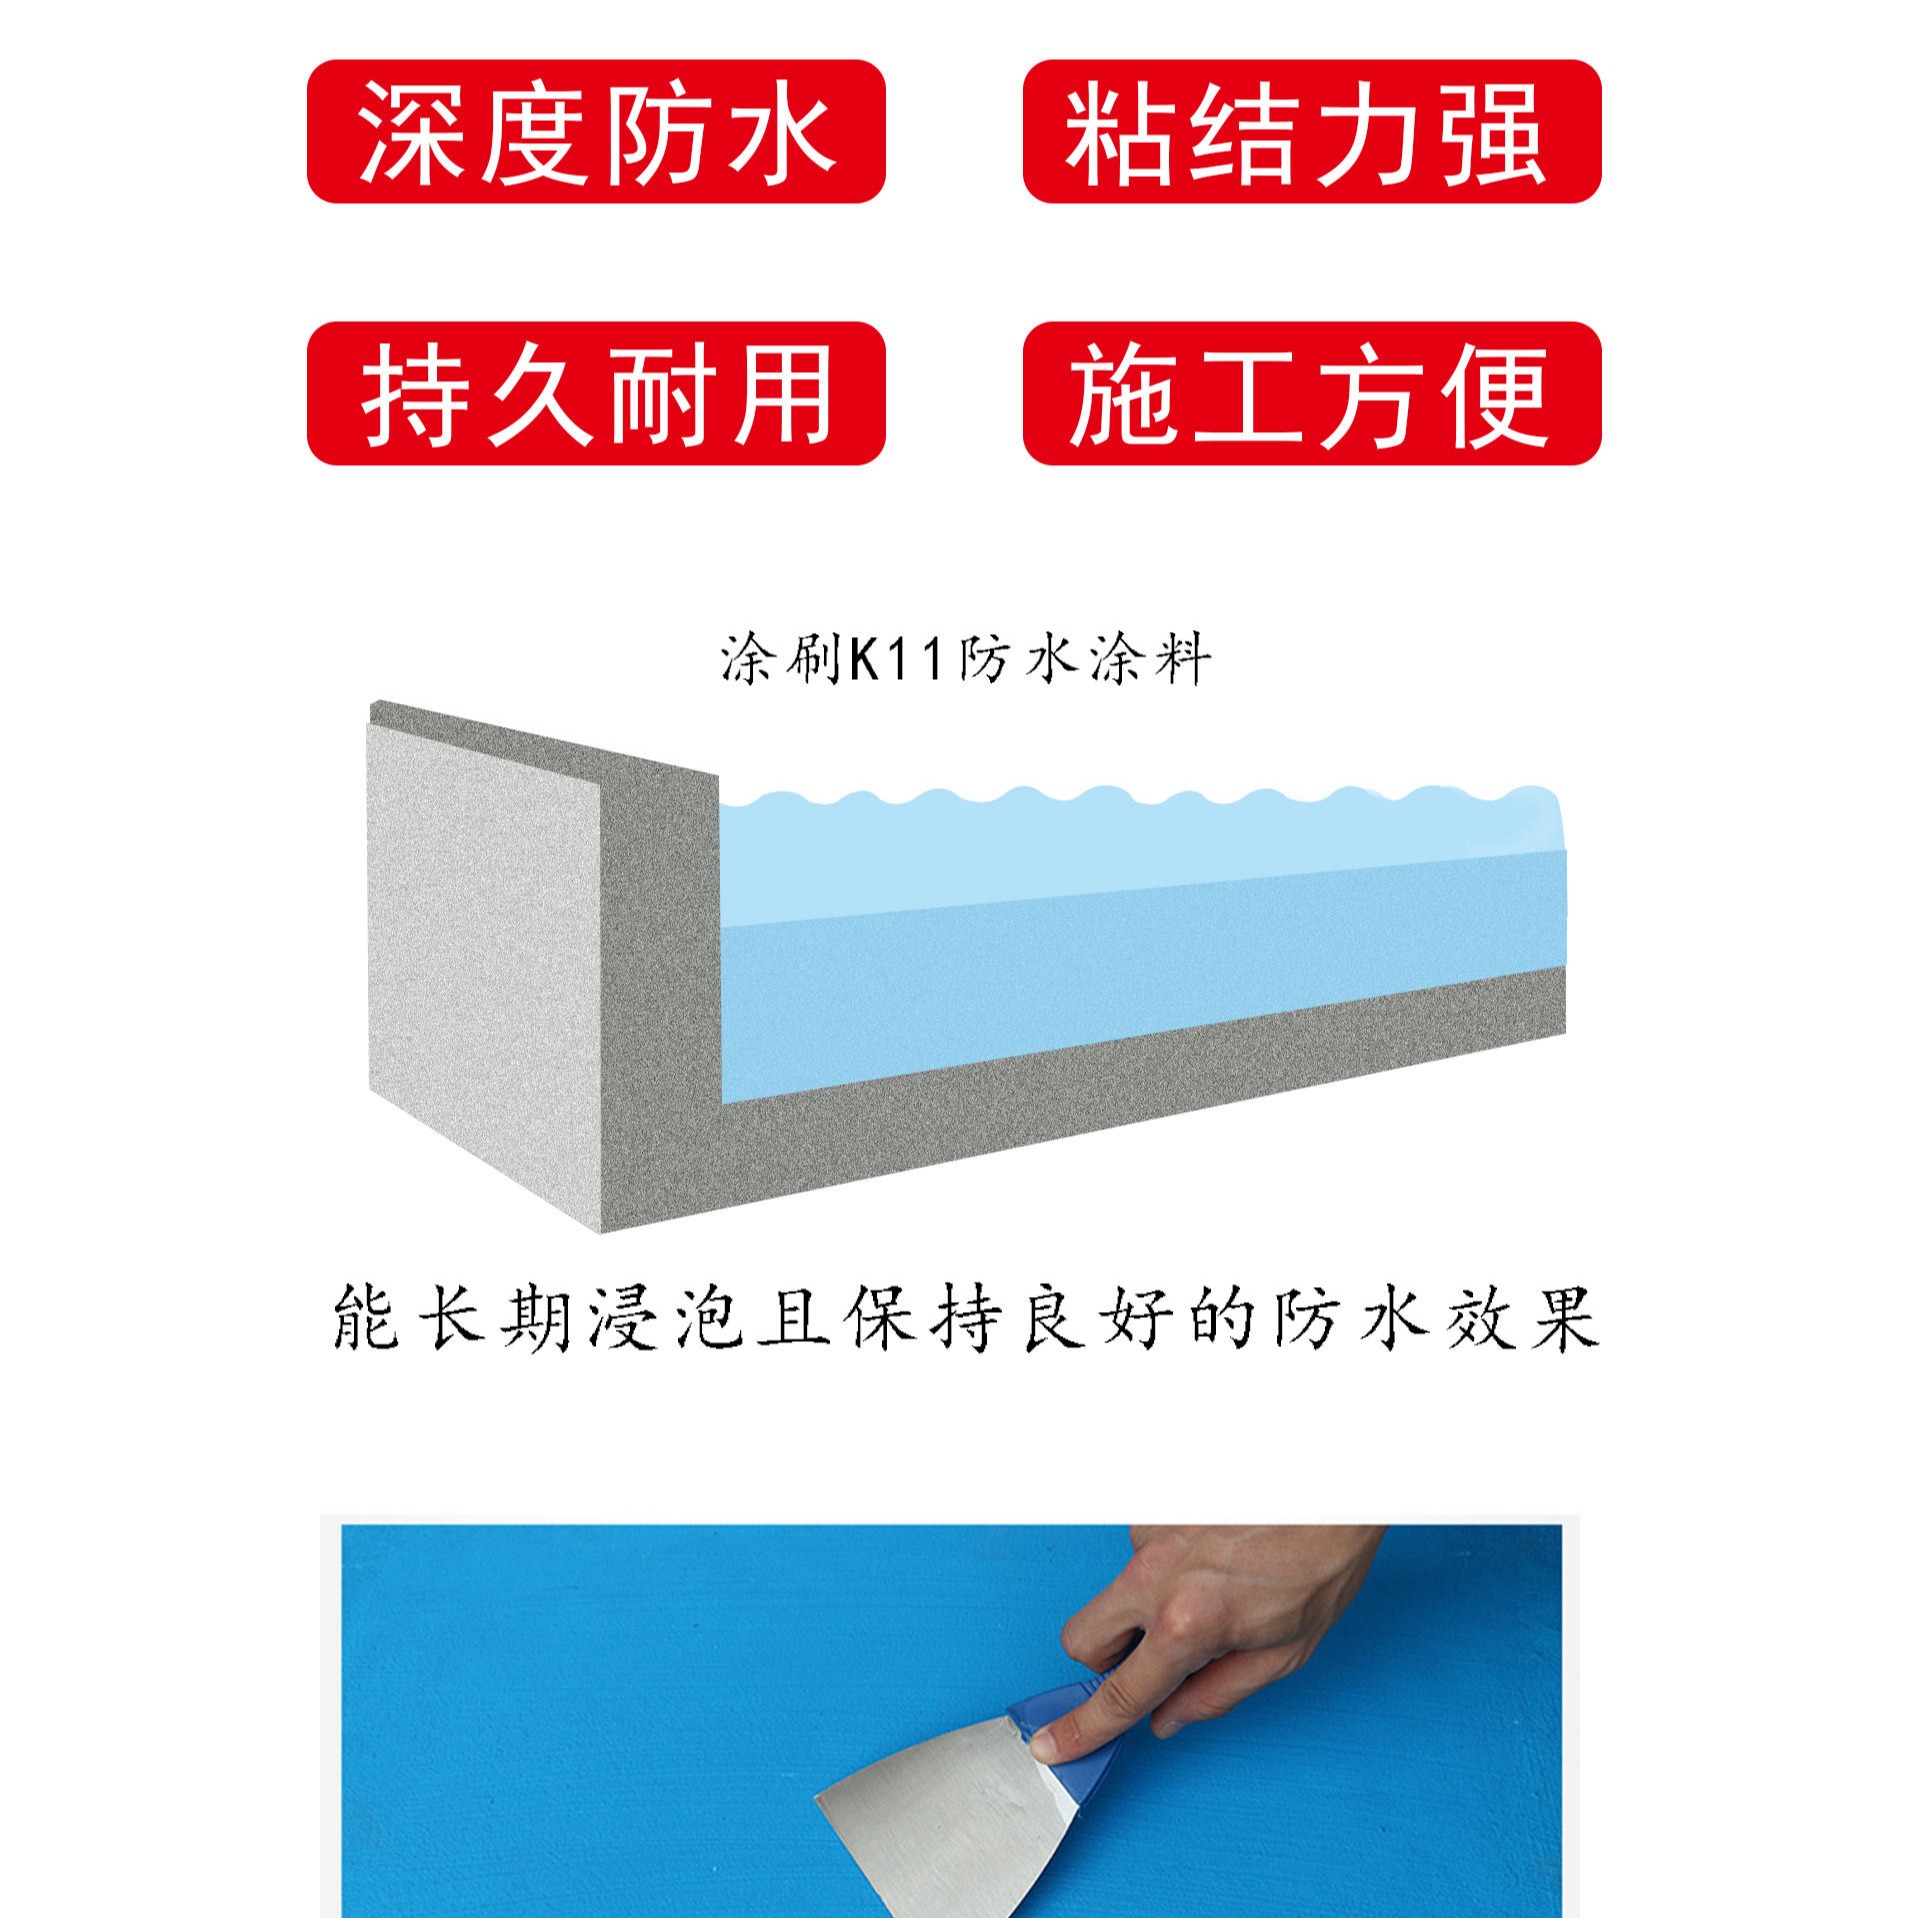 固德乐K11通用型防水涂料 厨卫王专用材料 厂家质量保证